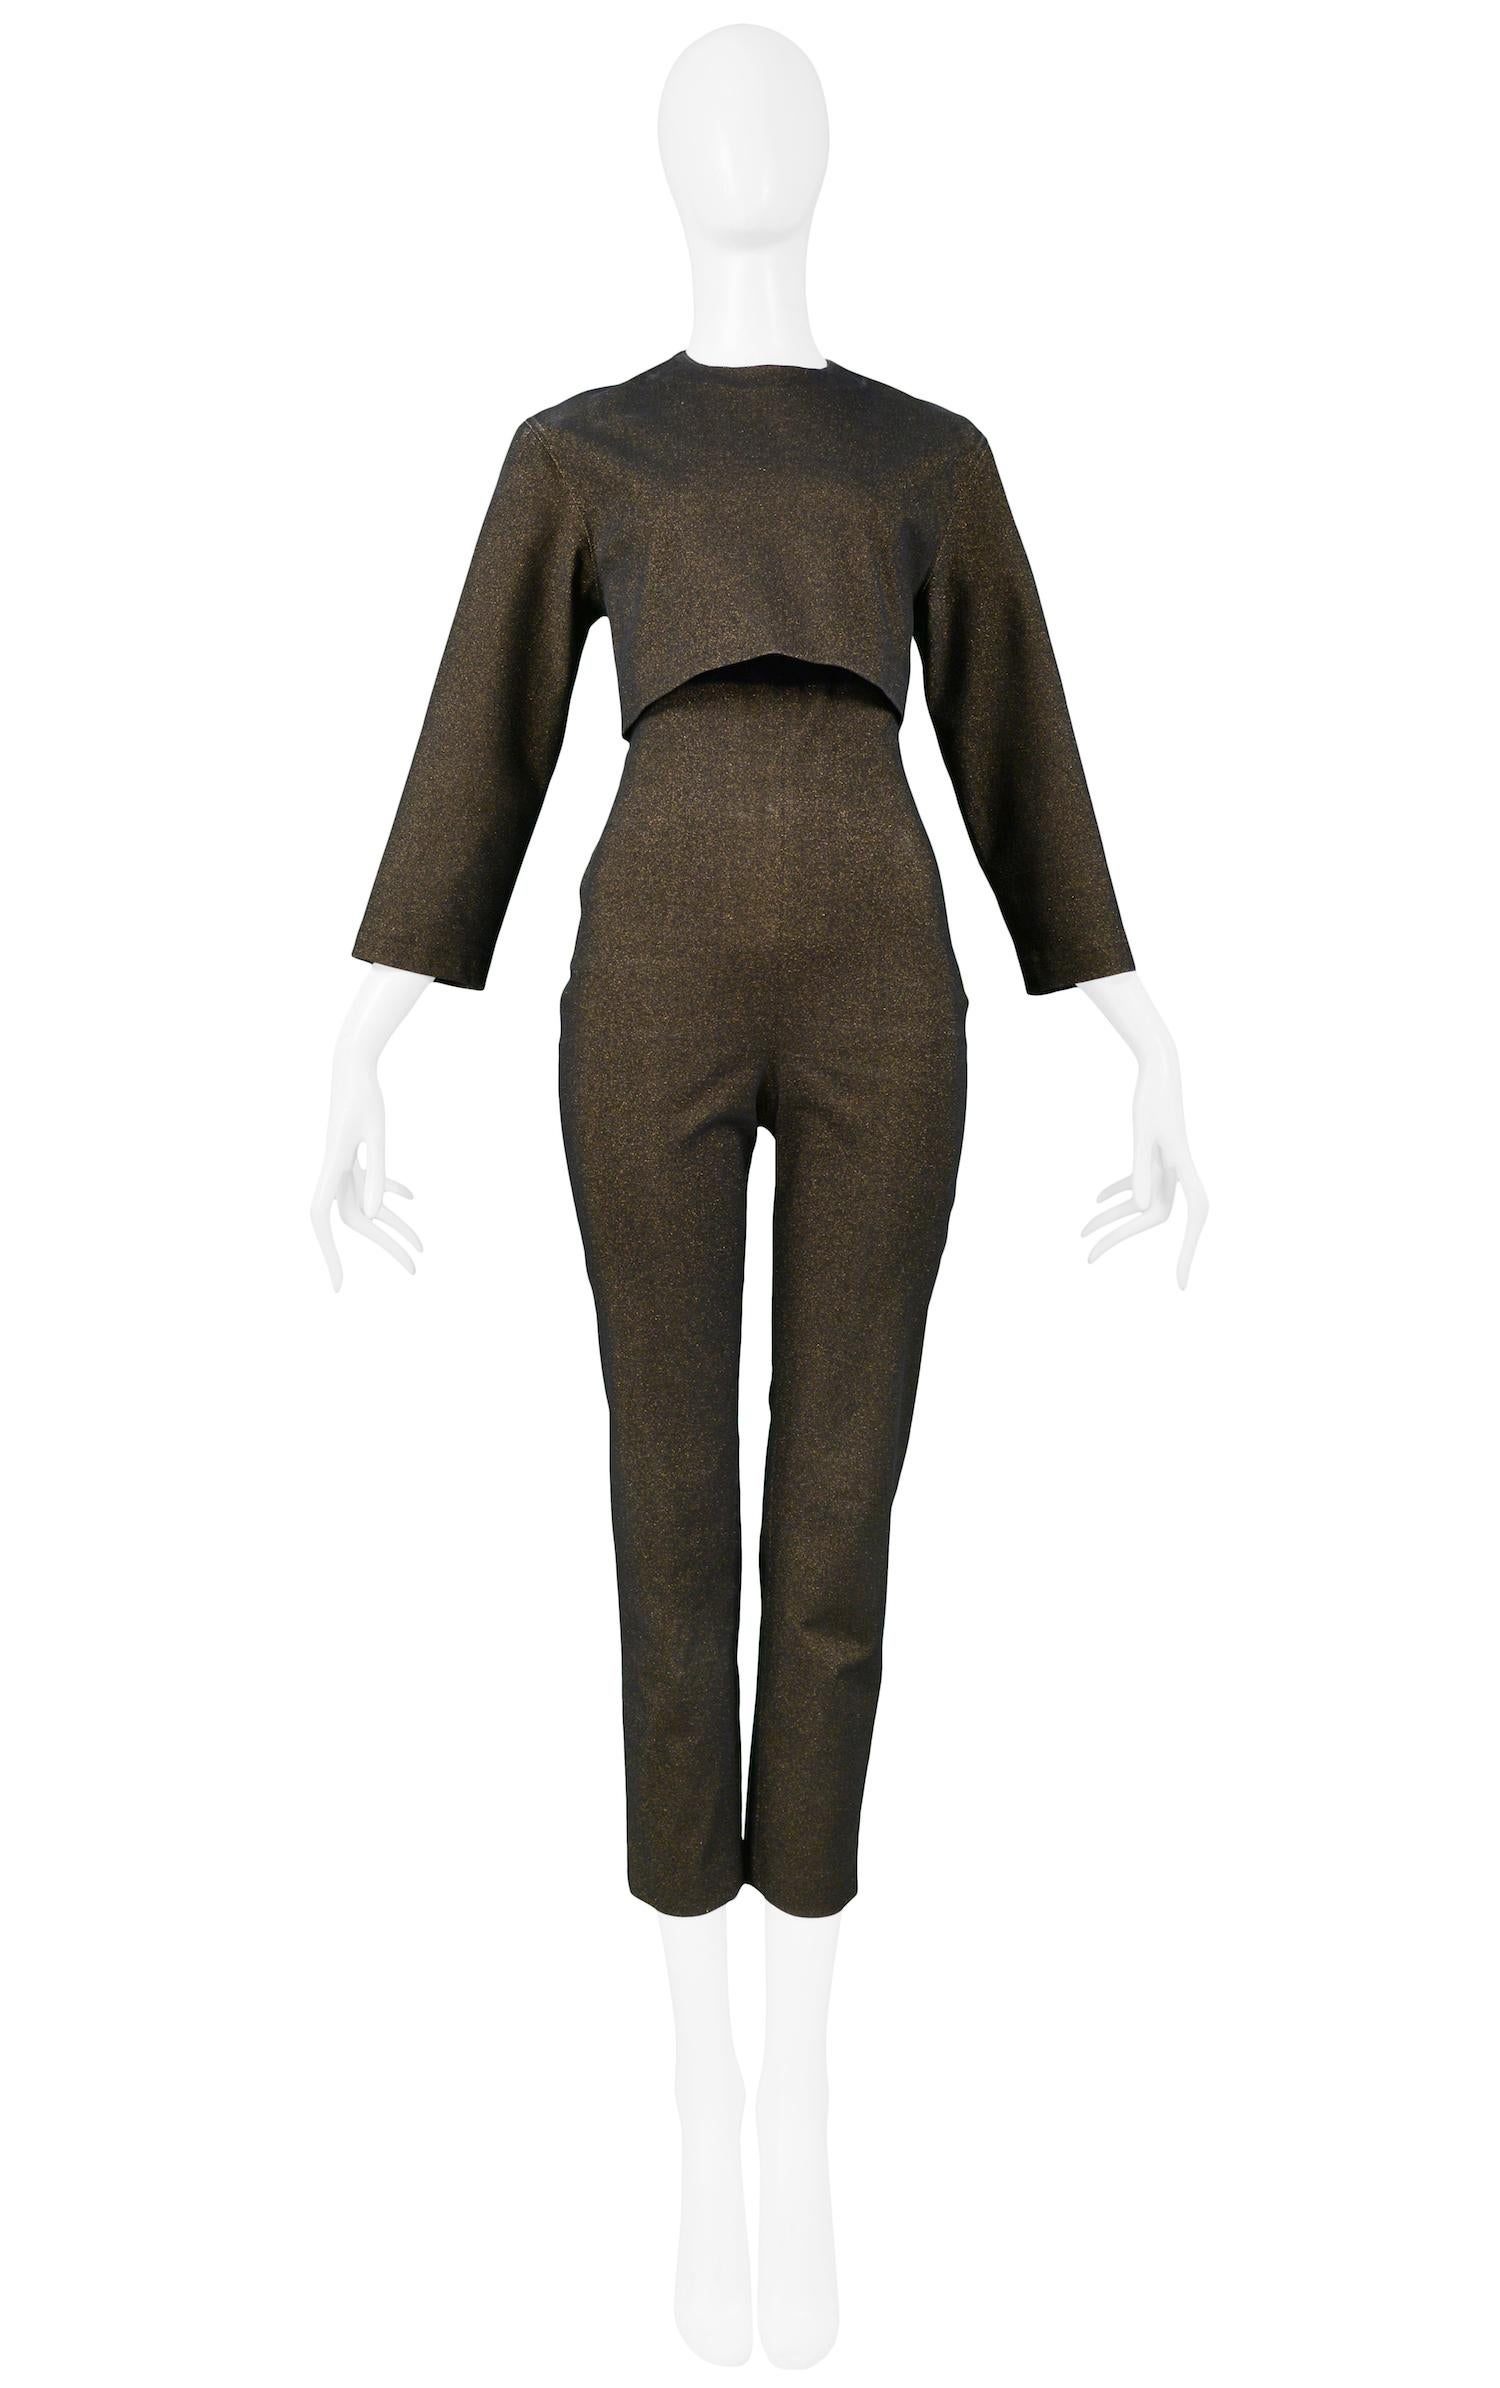 Combinaison vintage Jean Paul Gaultier en maille bronze métallisée et noire, sans manches, avec le crop top / veste assorti, avec des manches trois-quarts. La combinaison a une fermeture éclair invisible au centre du dos, et la veste a une fermeture